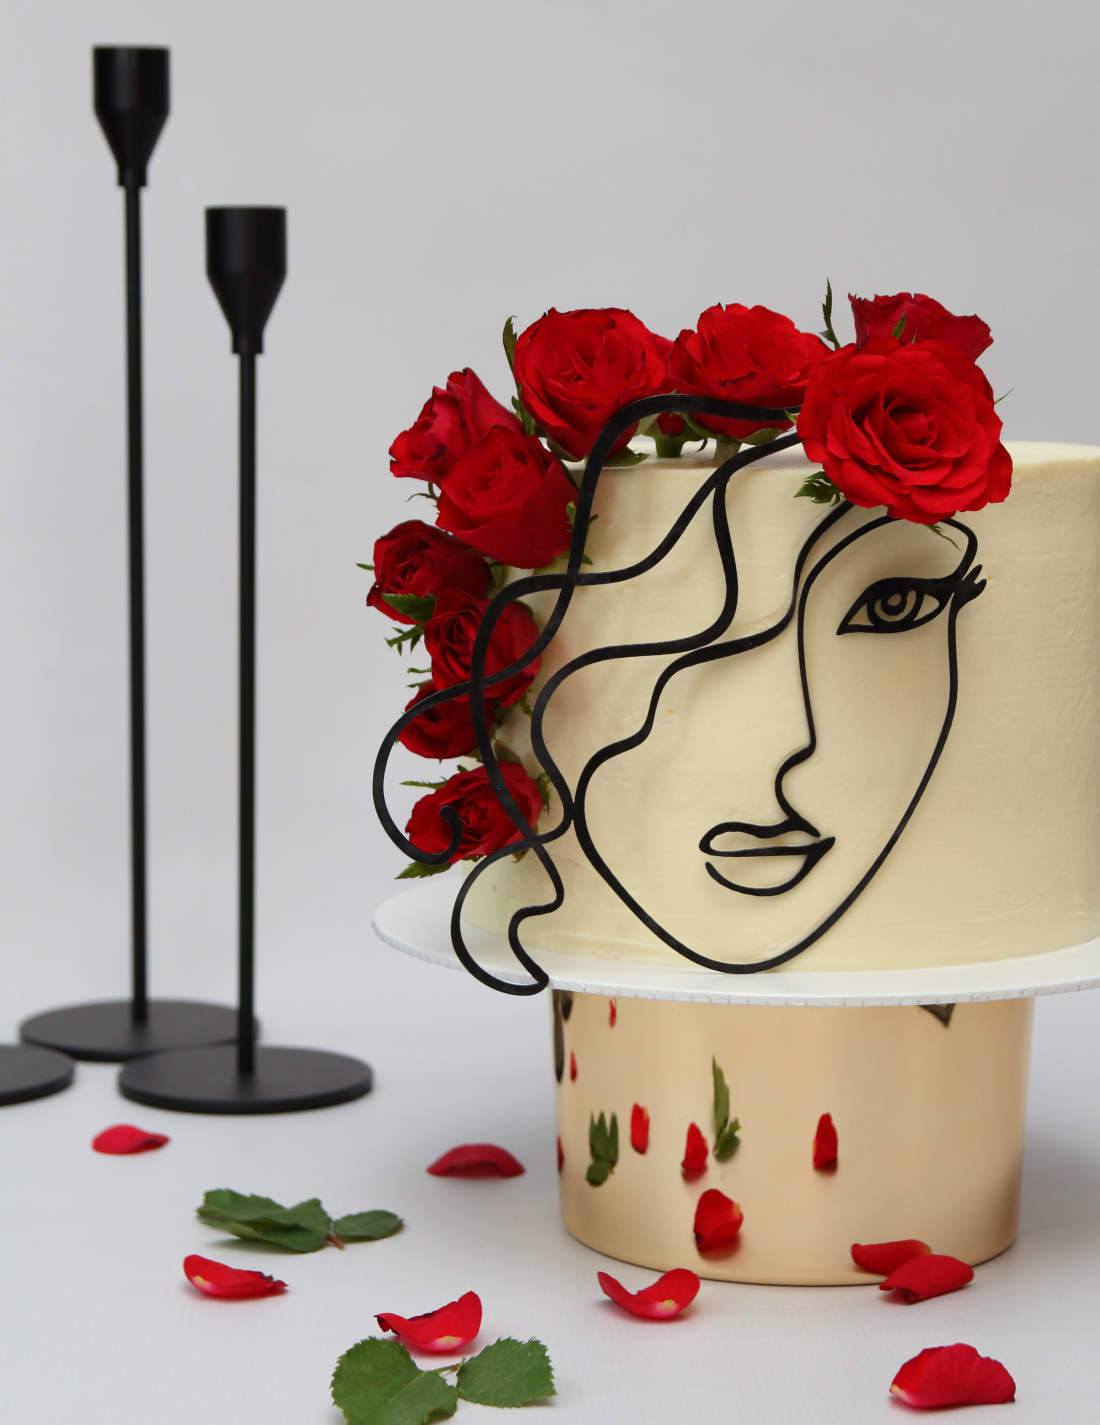 Šventinis tortas su rožių žiedlapiais